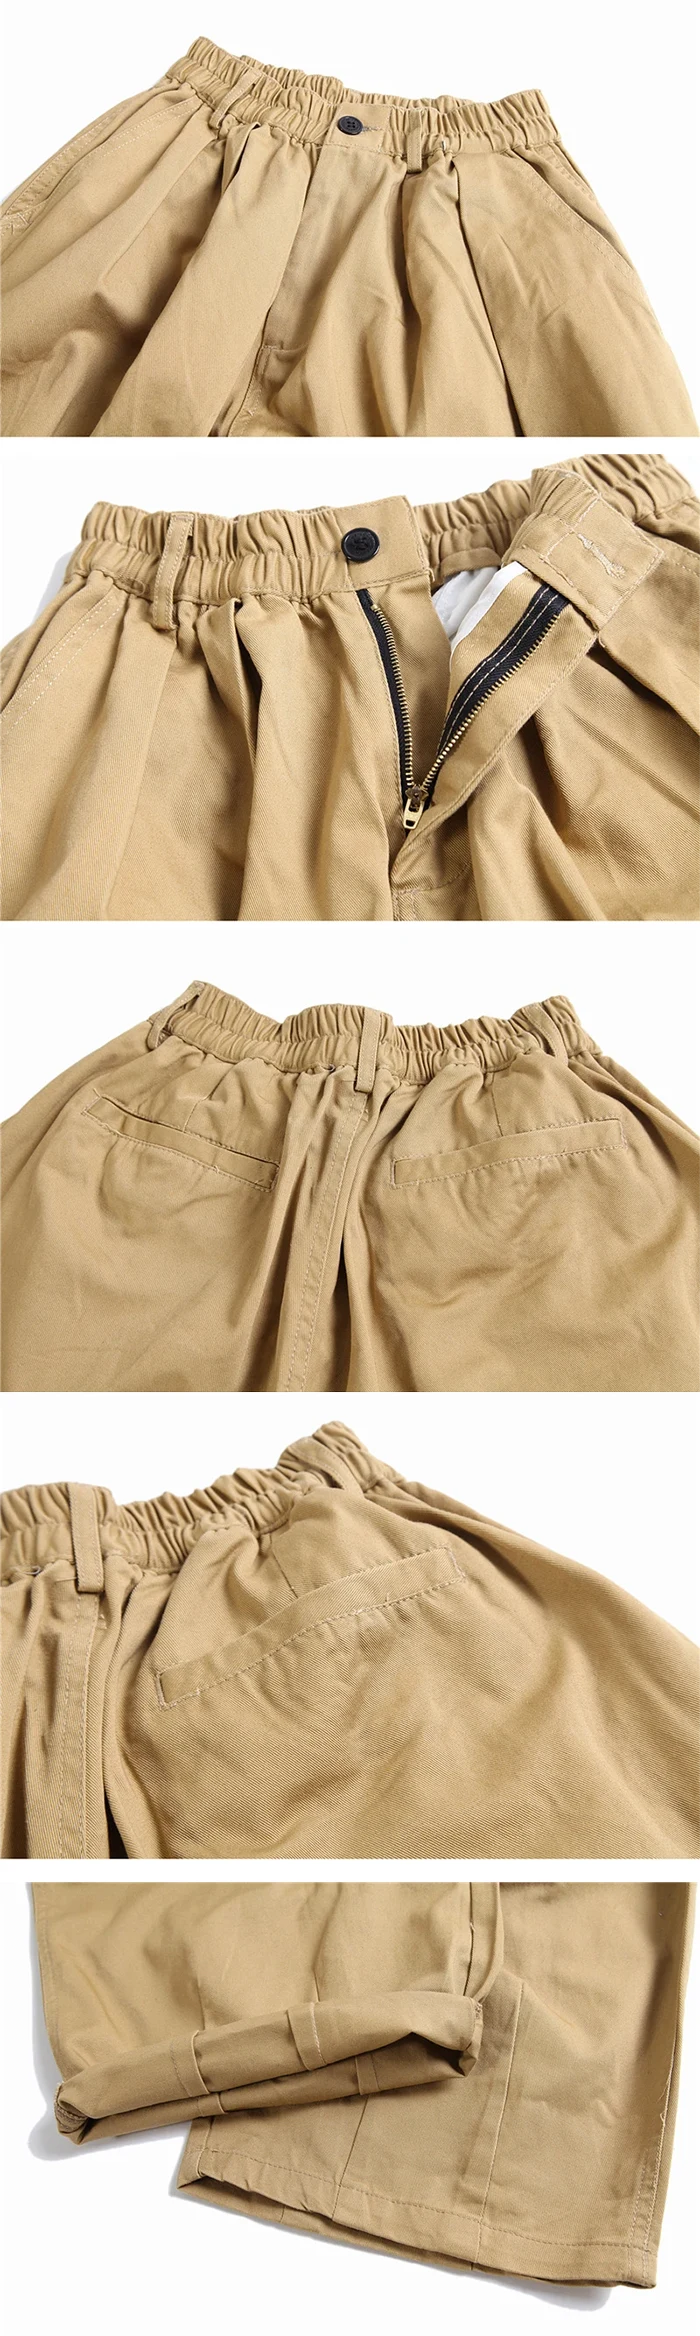 more details of the Oversized pants "Kushima"